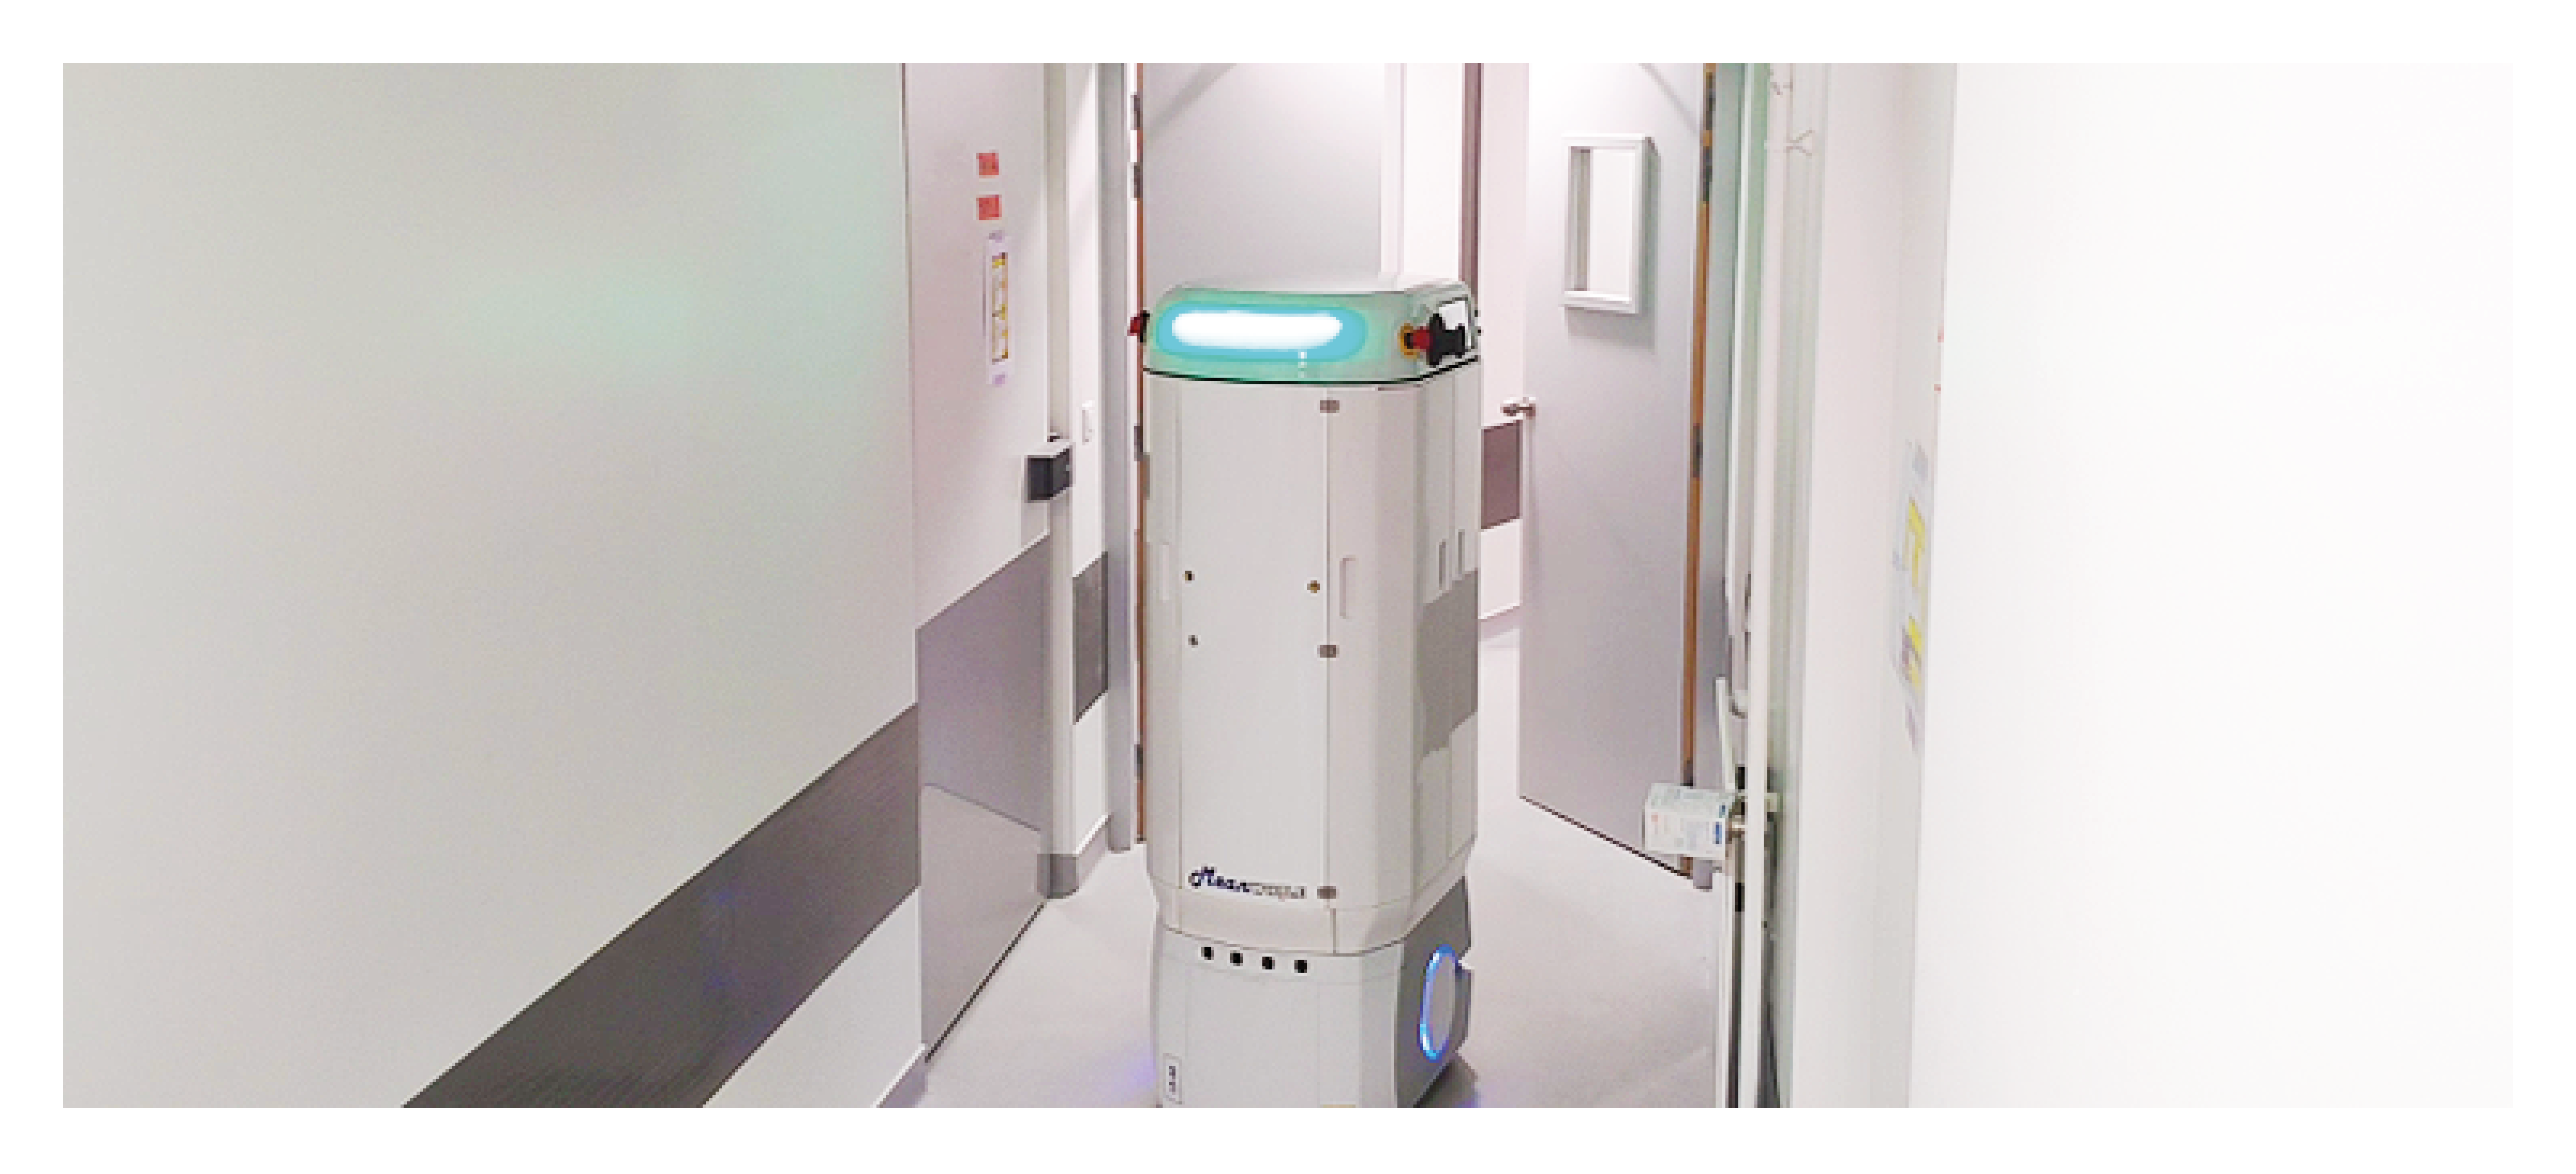 Lire la suite à propos de l’article La robotique mobile autonome au service de la lutte contre les infections nosocomiales dans les établissements de santé